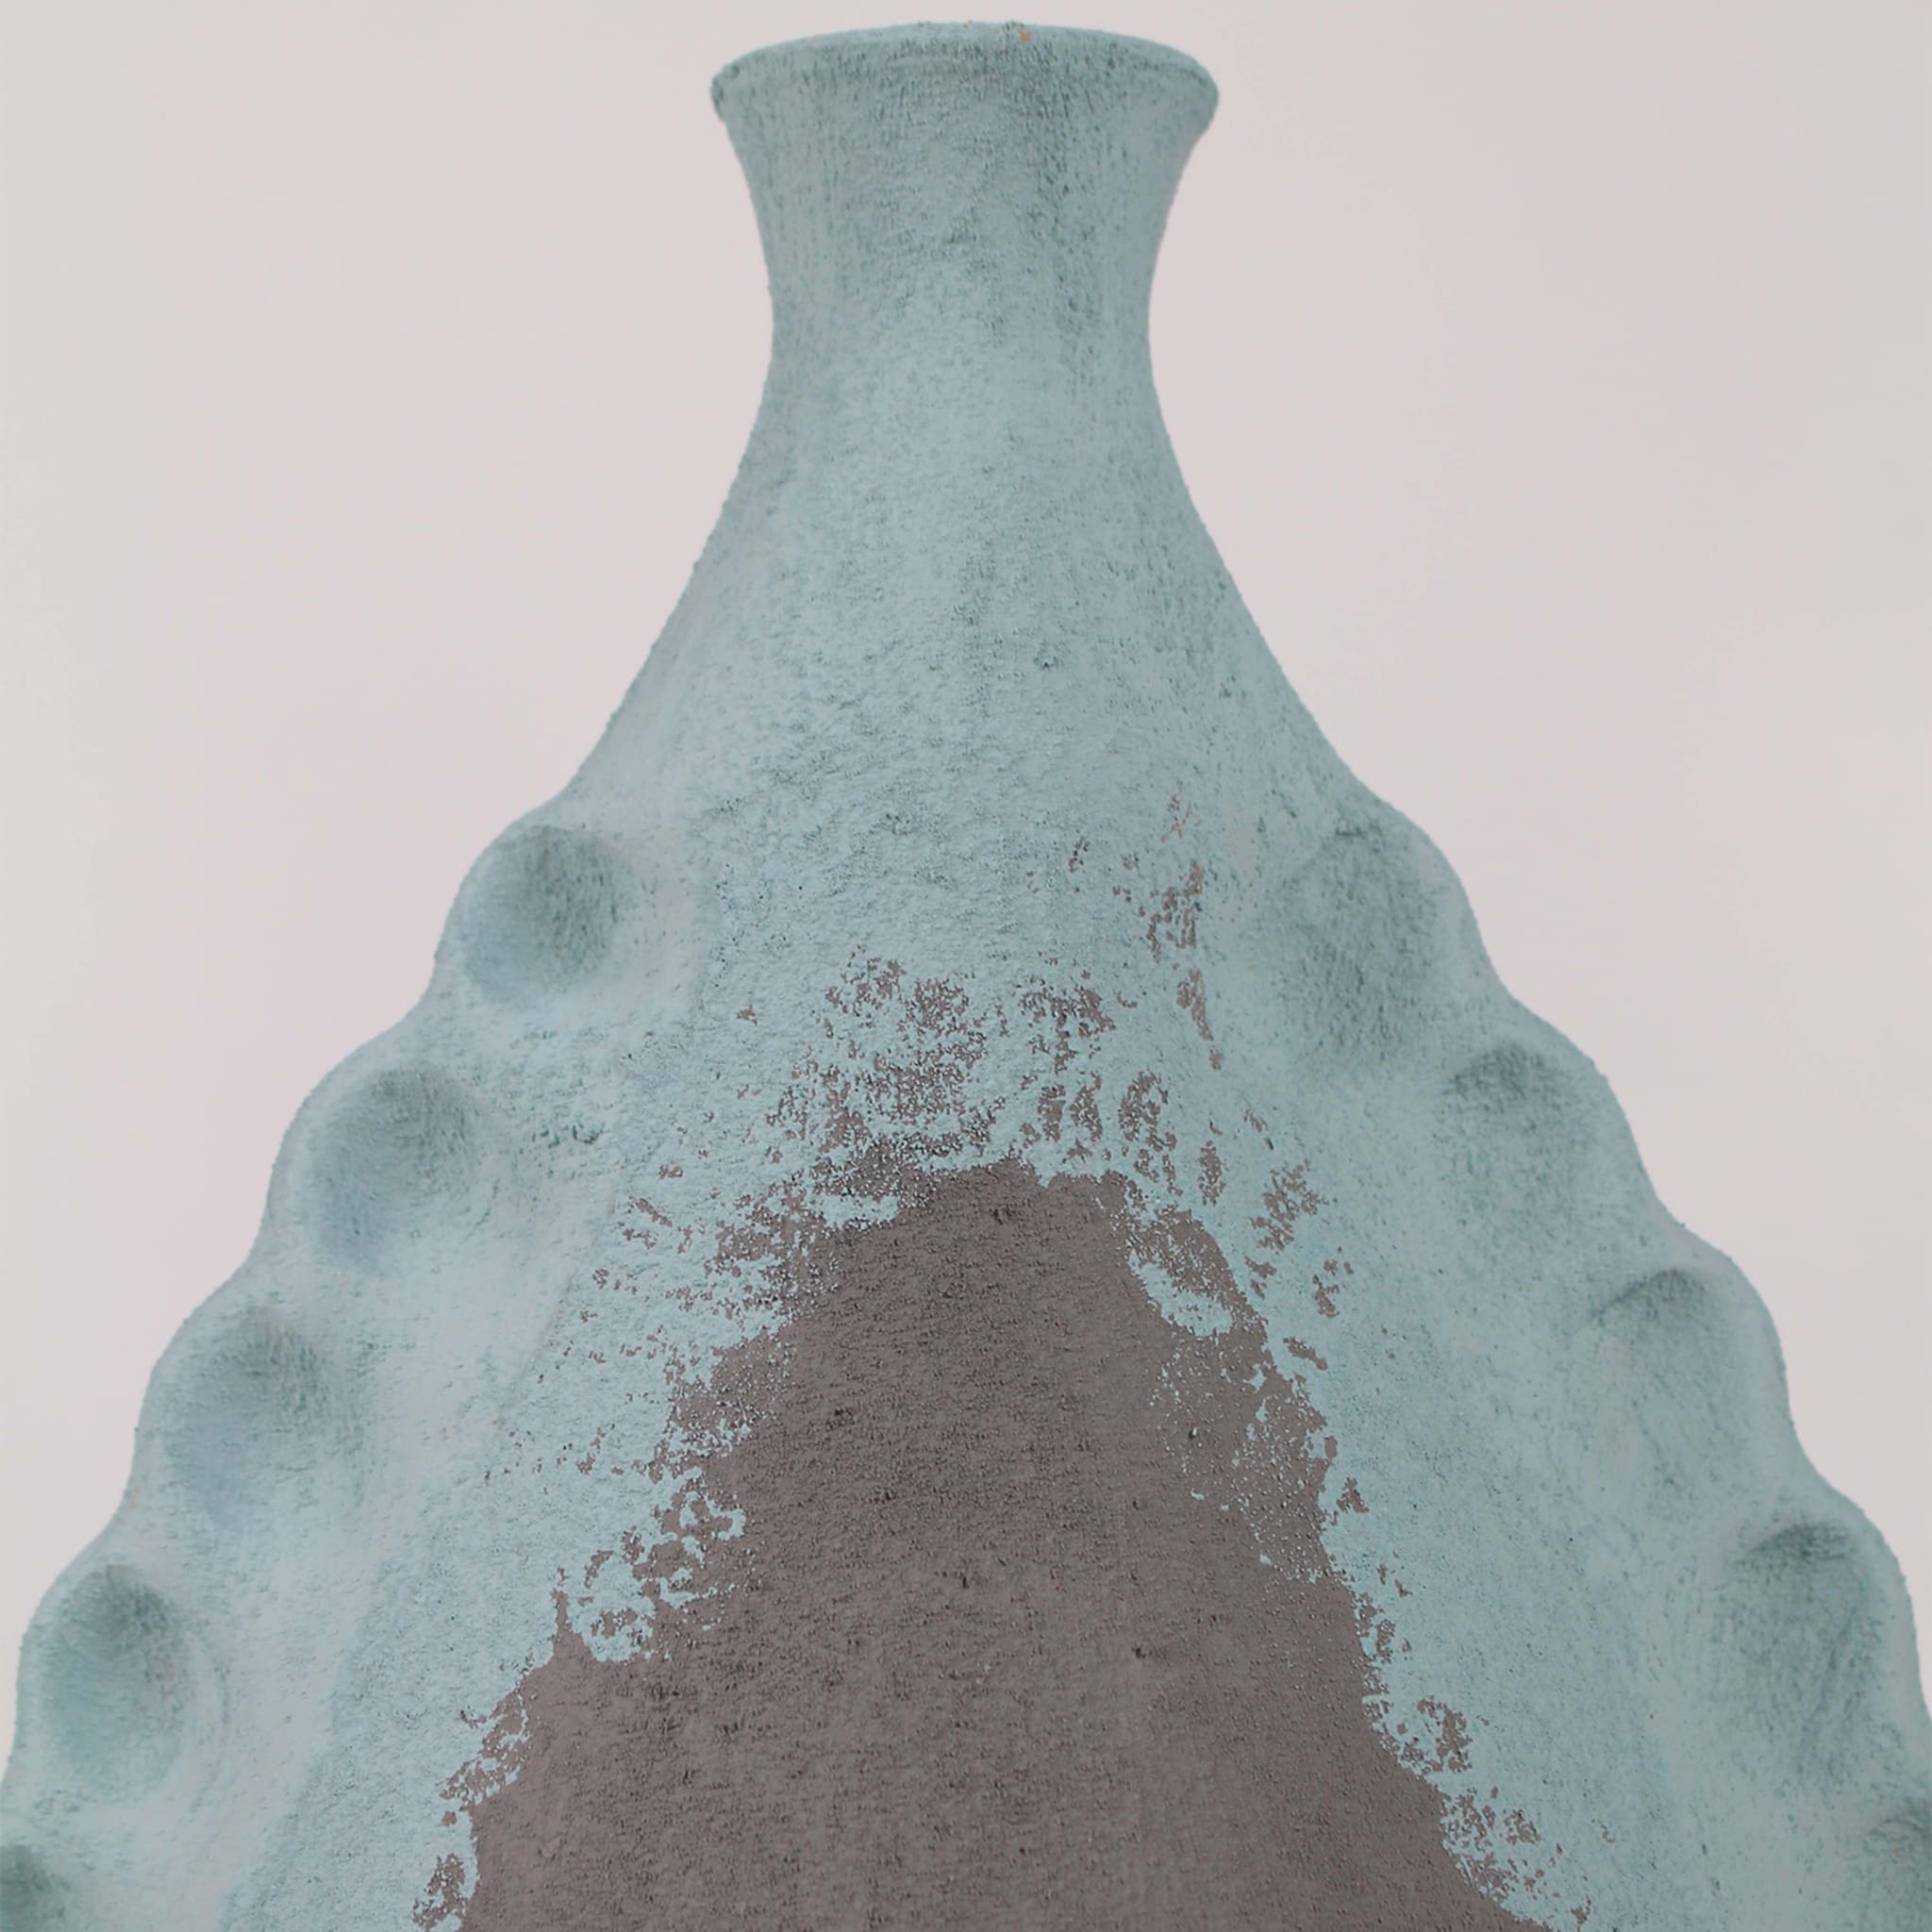 Azurblaue und graue Vase in Mandelform 20 von Mascia Meccani - Alternative Ansicht 3